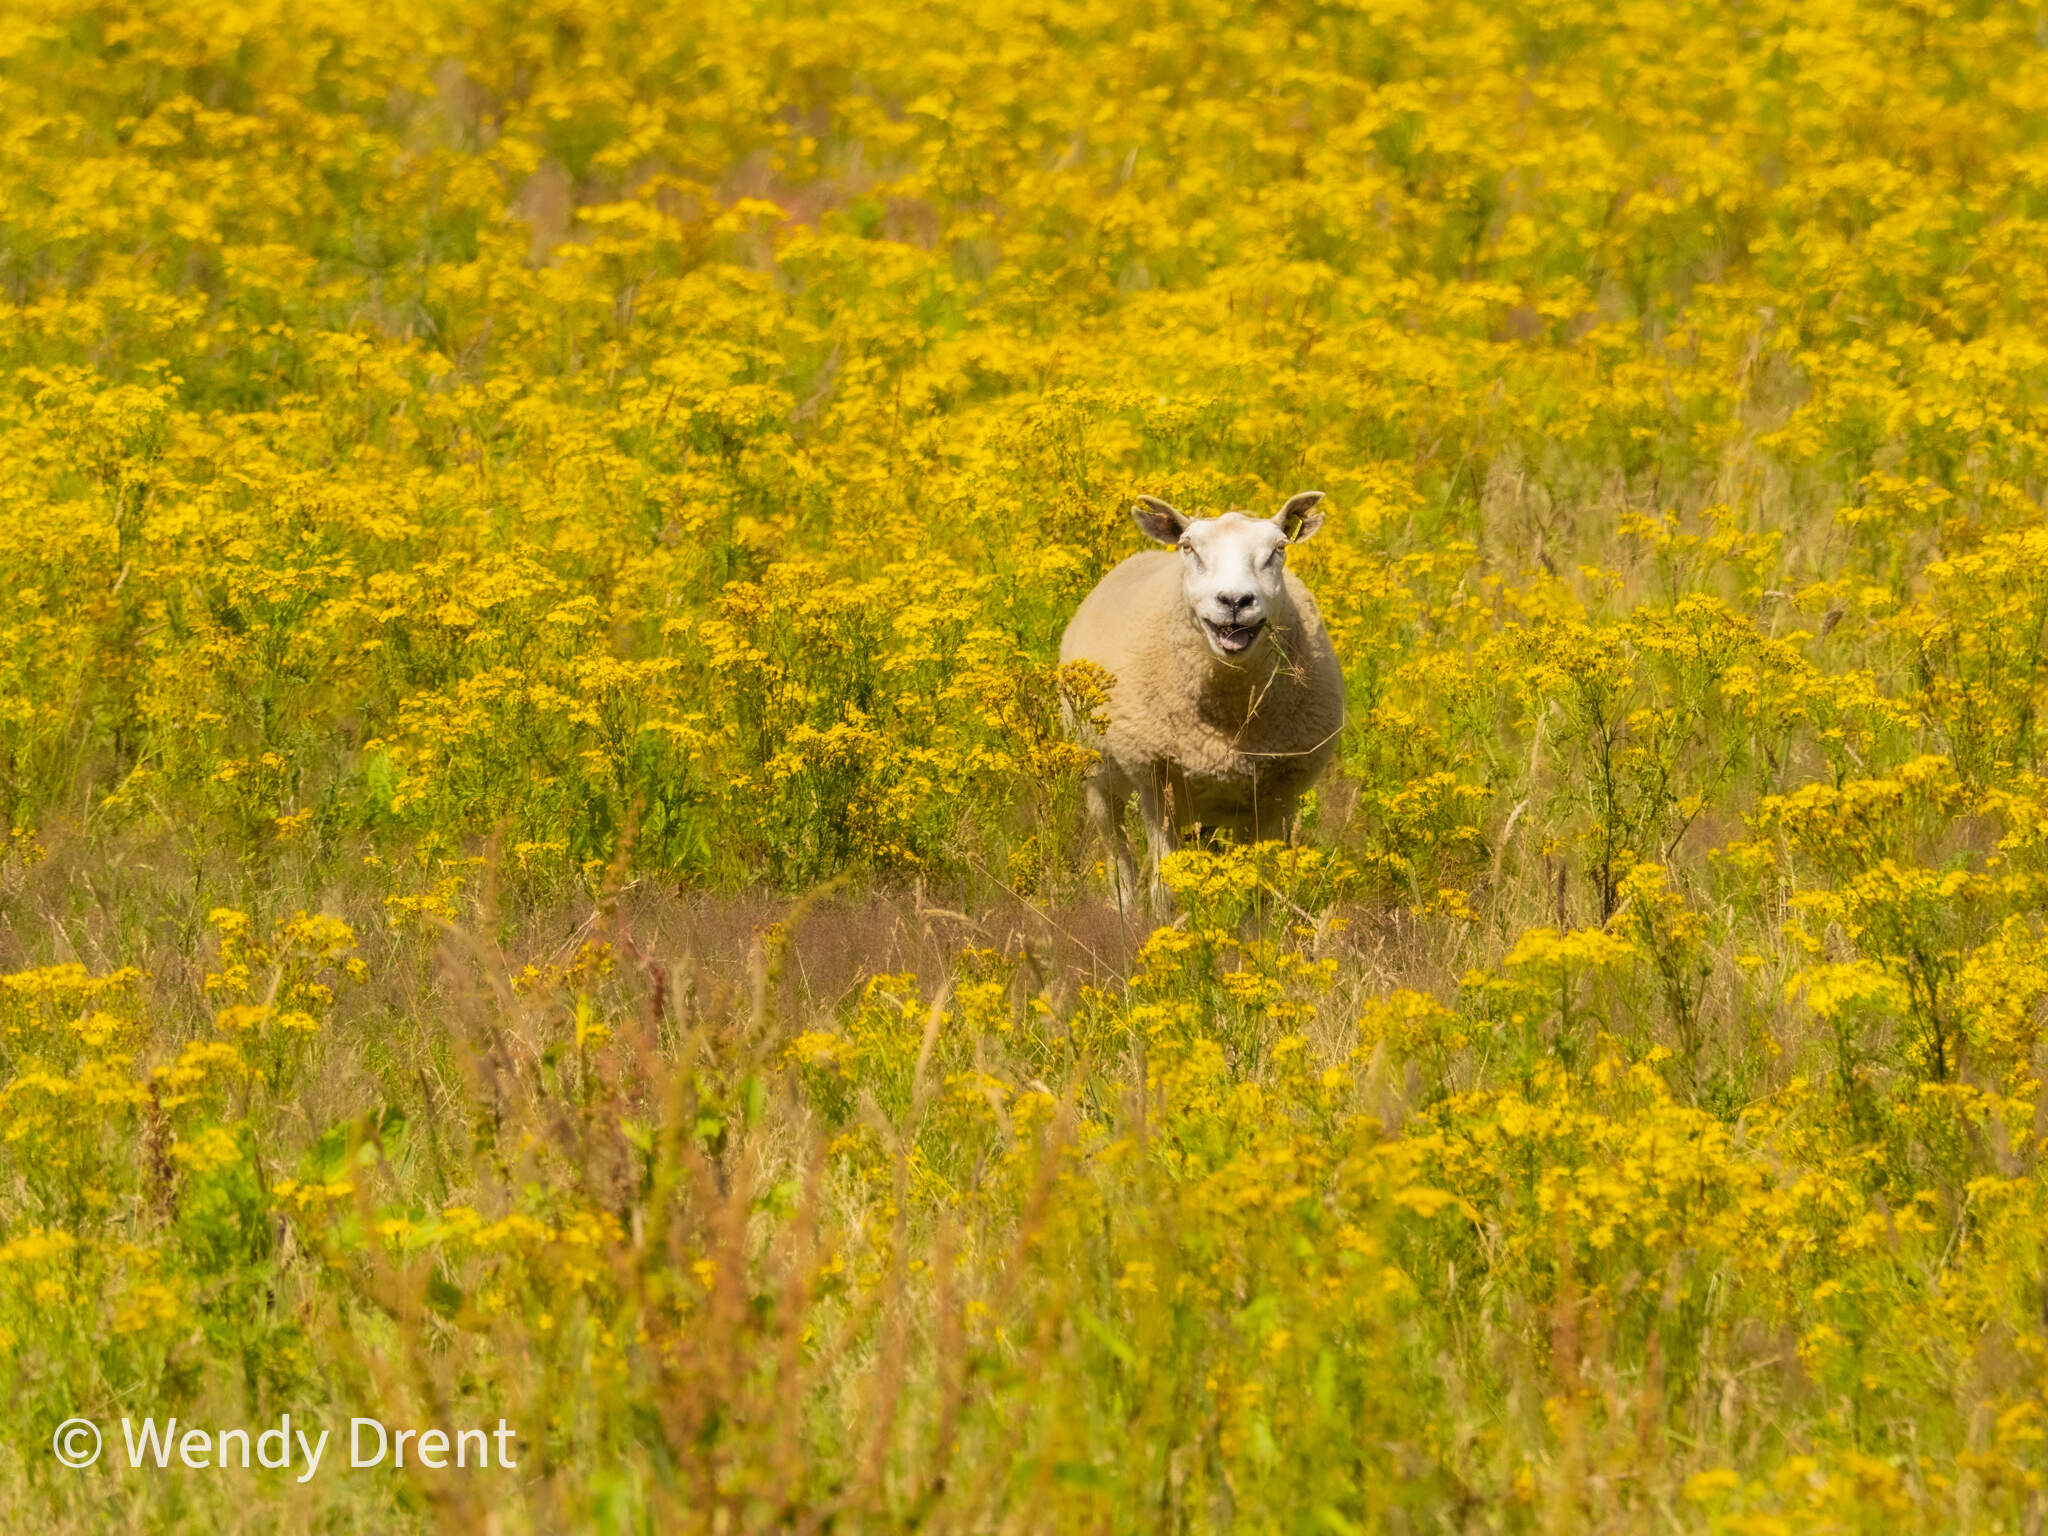 sheep, wendy drent, smiling, happy face, yellow flowers, spring, summer, nature, mammals, schaap, voorjaar, vrolijk, natuurfotografie